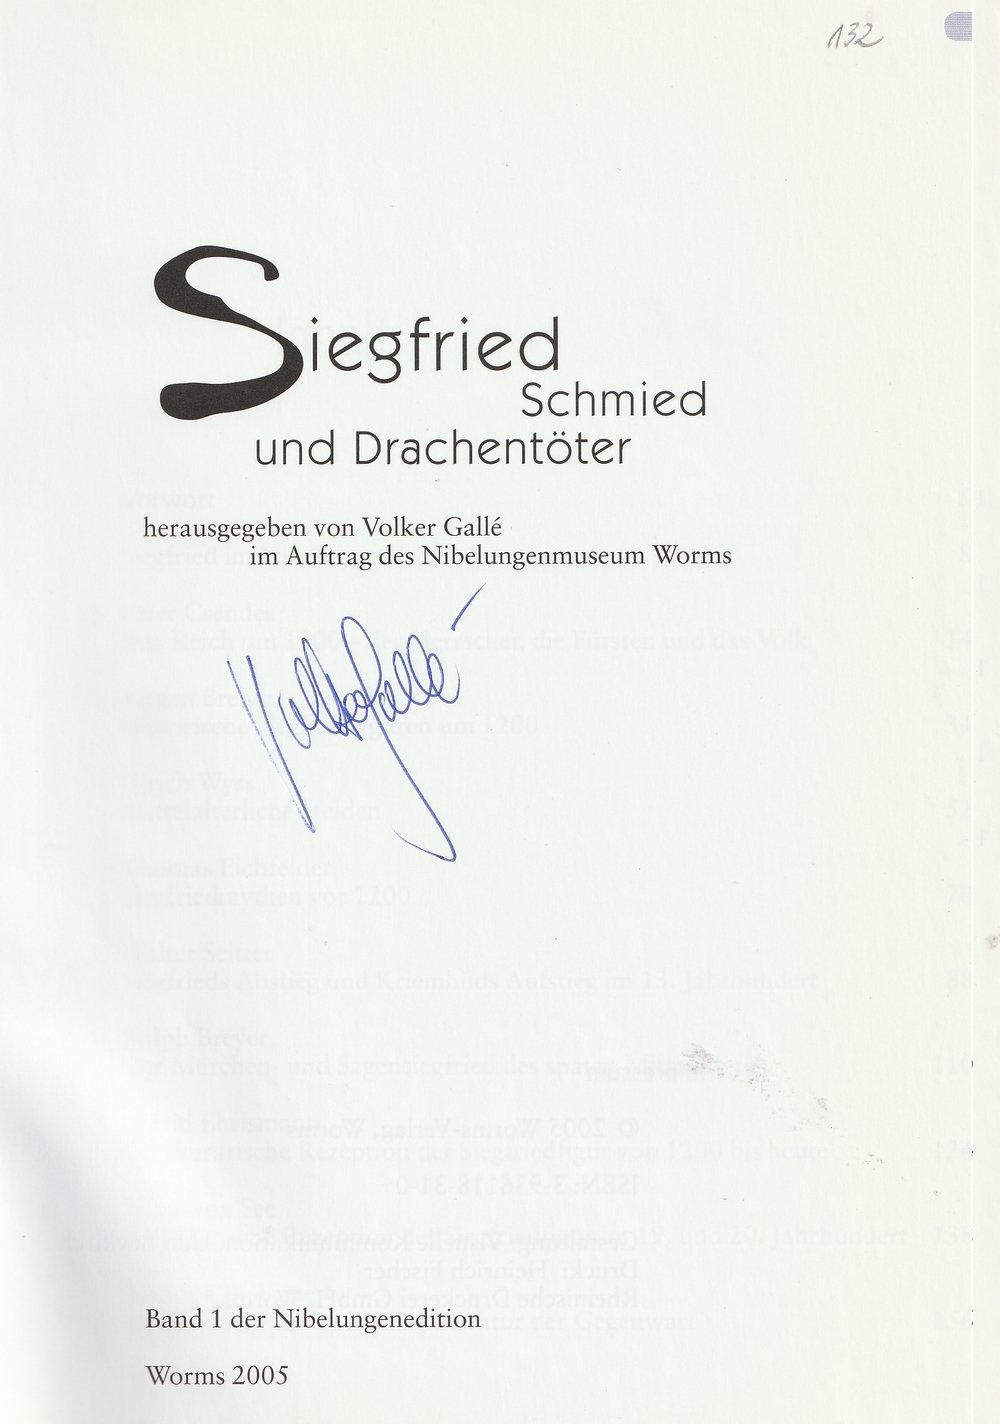 Siegfried - Schmied und Drachentöter (Kulturverein Guntersblum CC BY-NC-SA)